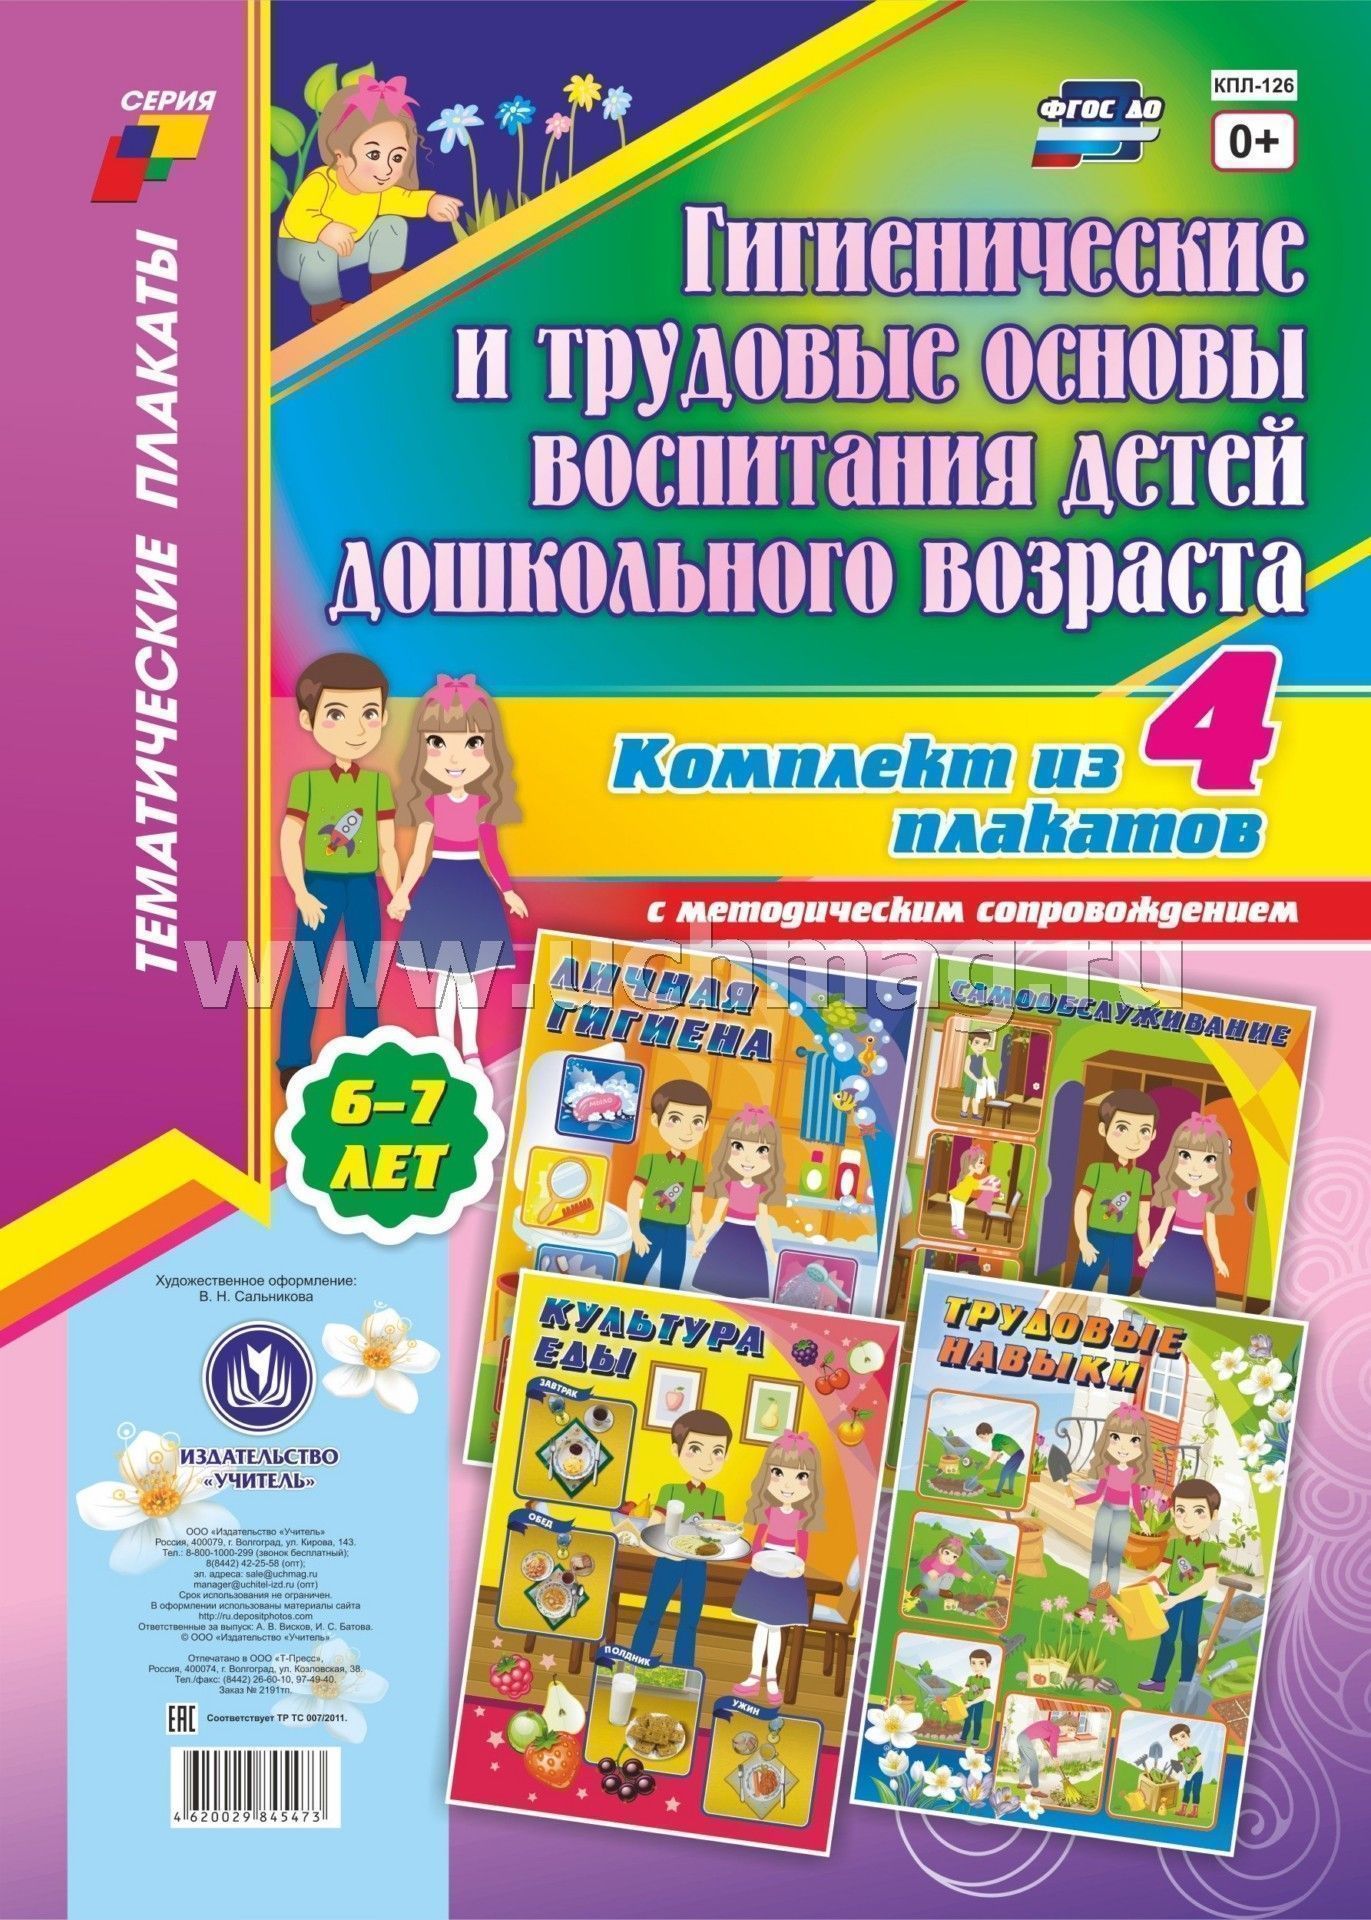 Комплект плакатов Гигиенические и трудовые основы воспитания детей дошк.воз